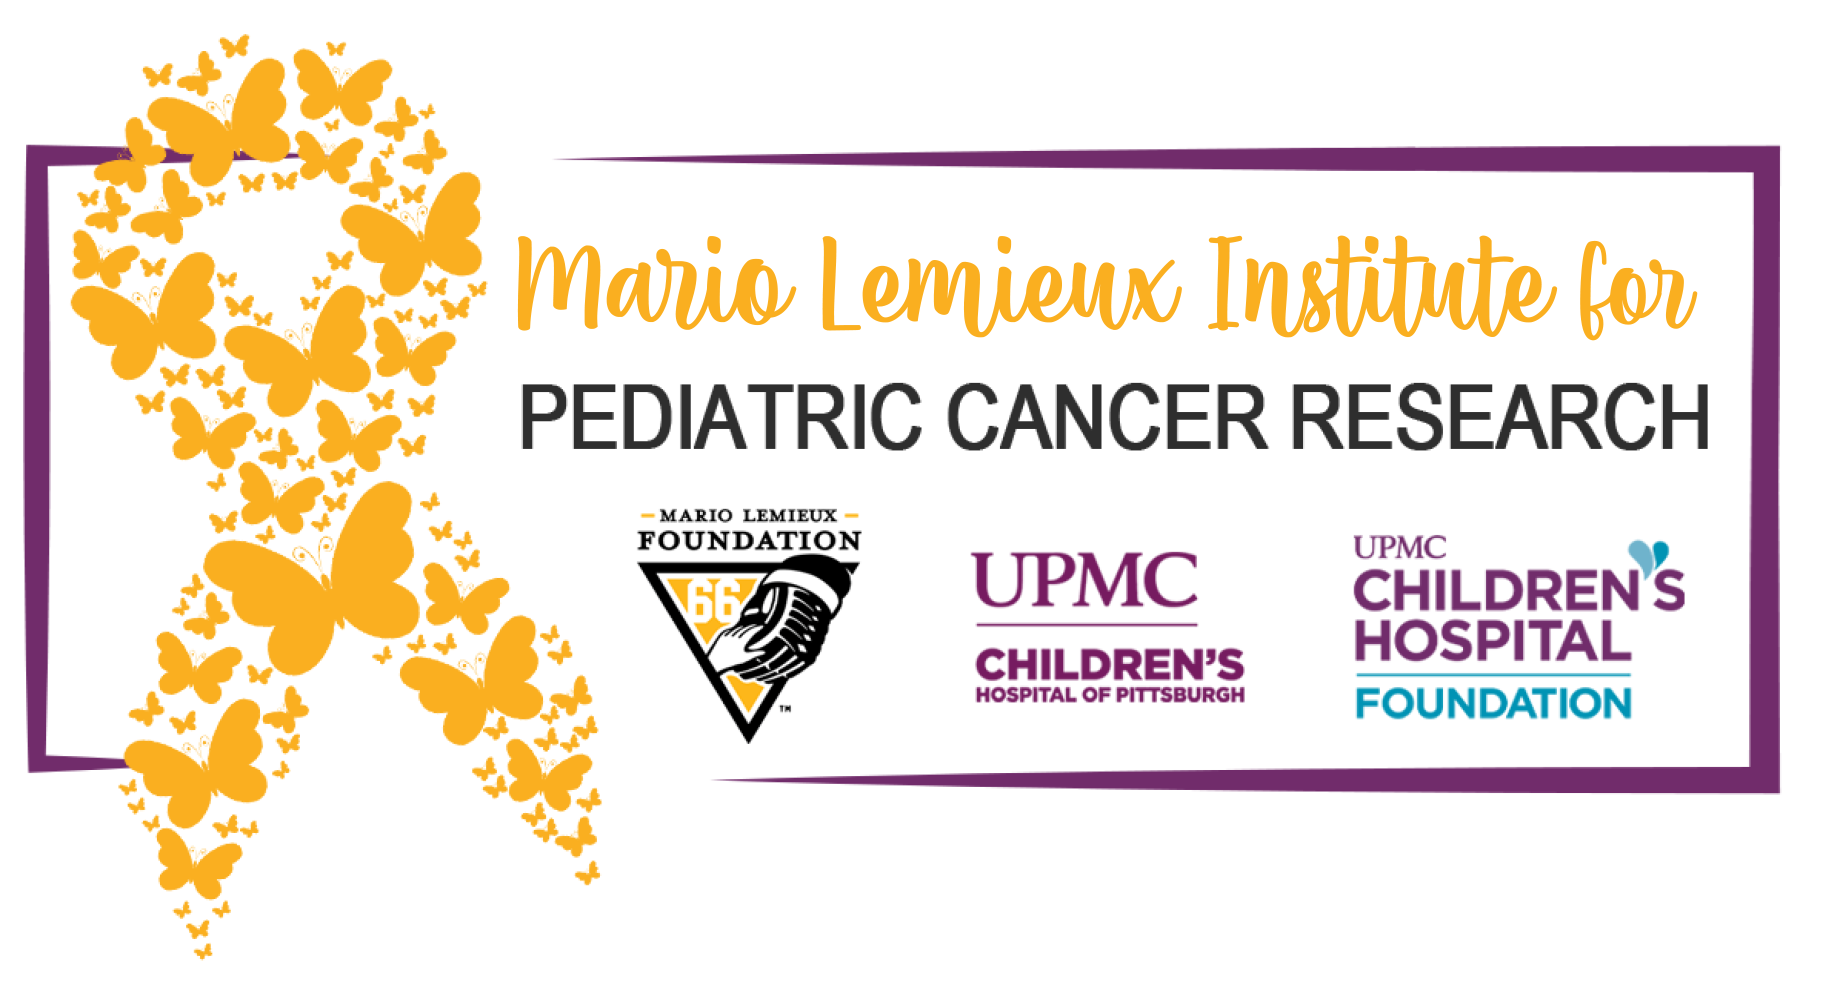 Mario Lemieux Foundation Establishes Pediatric Cancer Research Institute